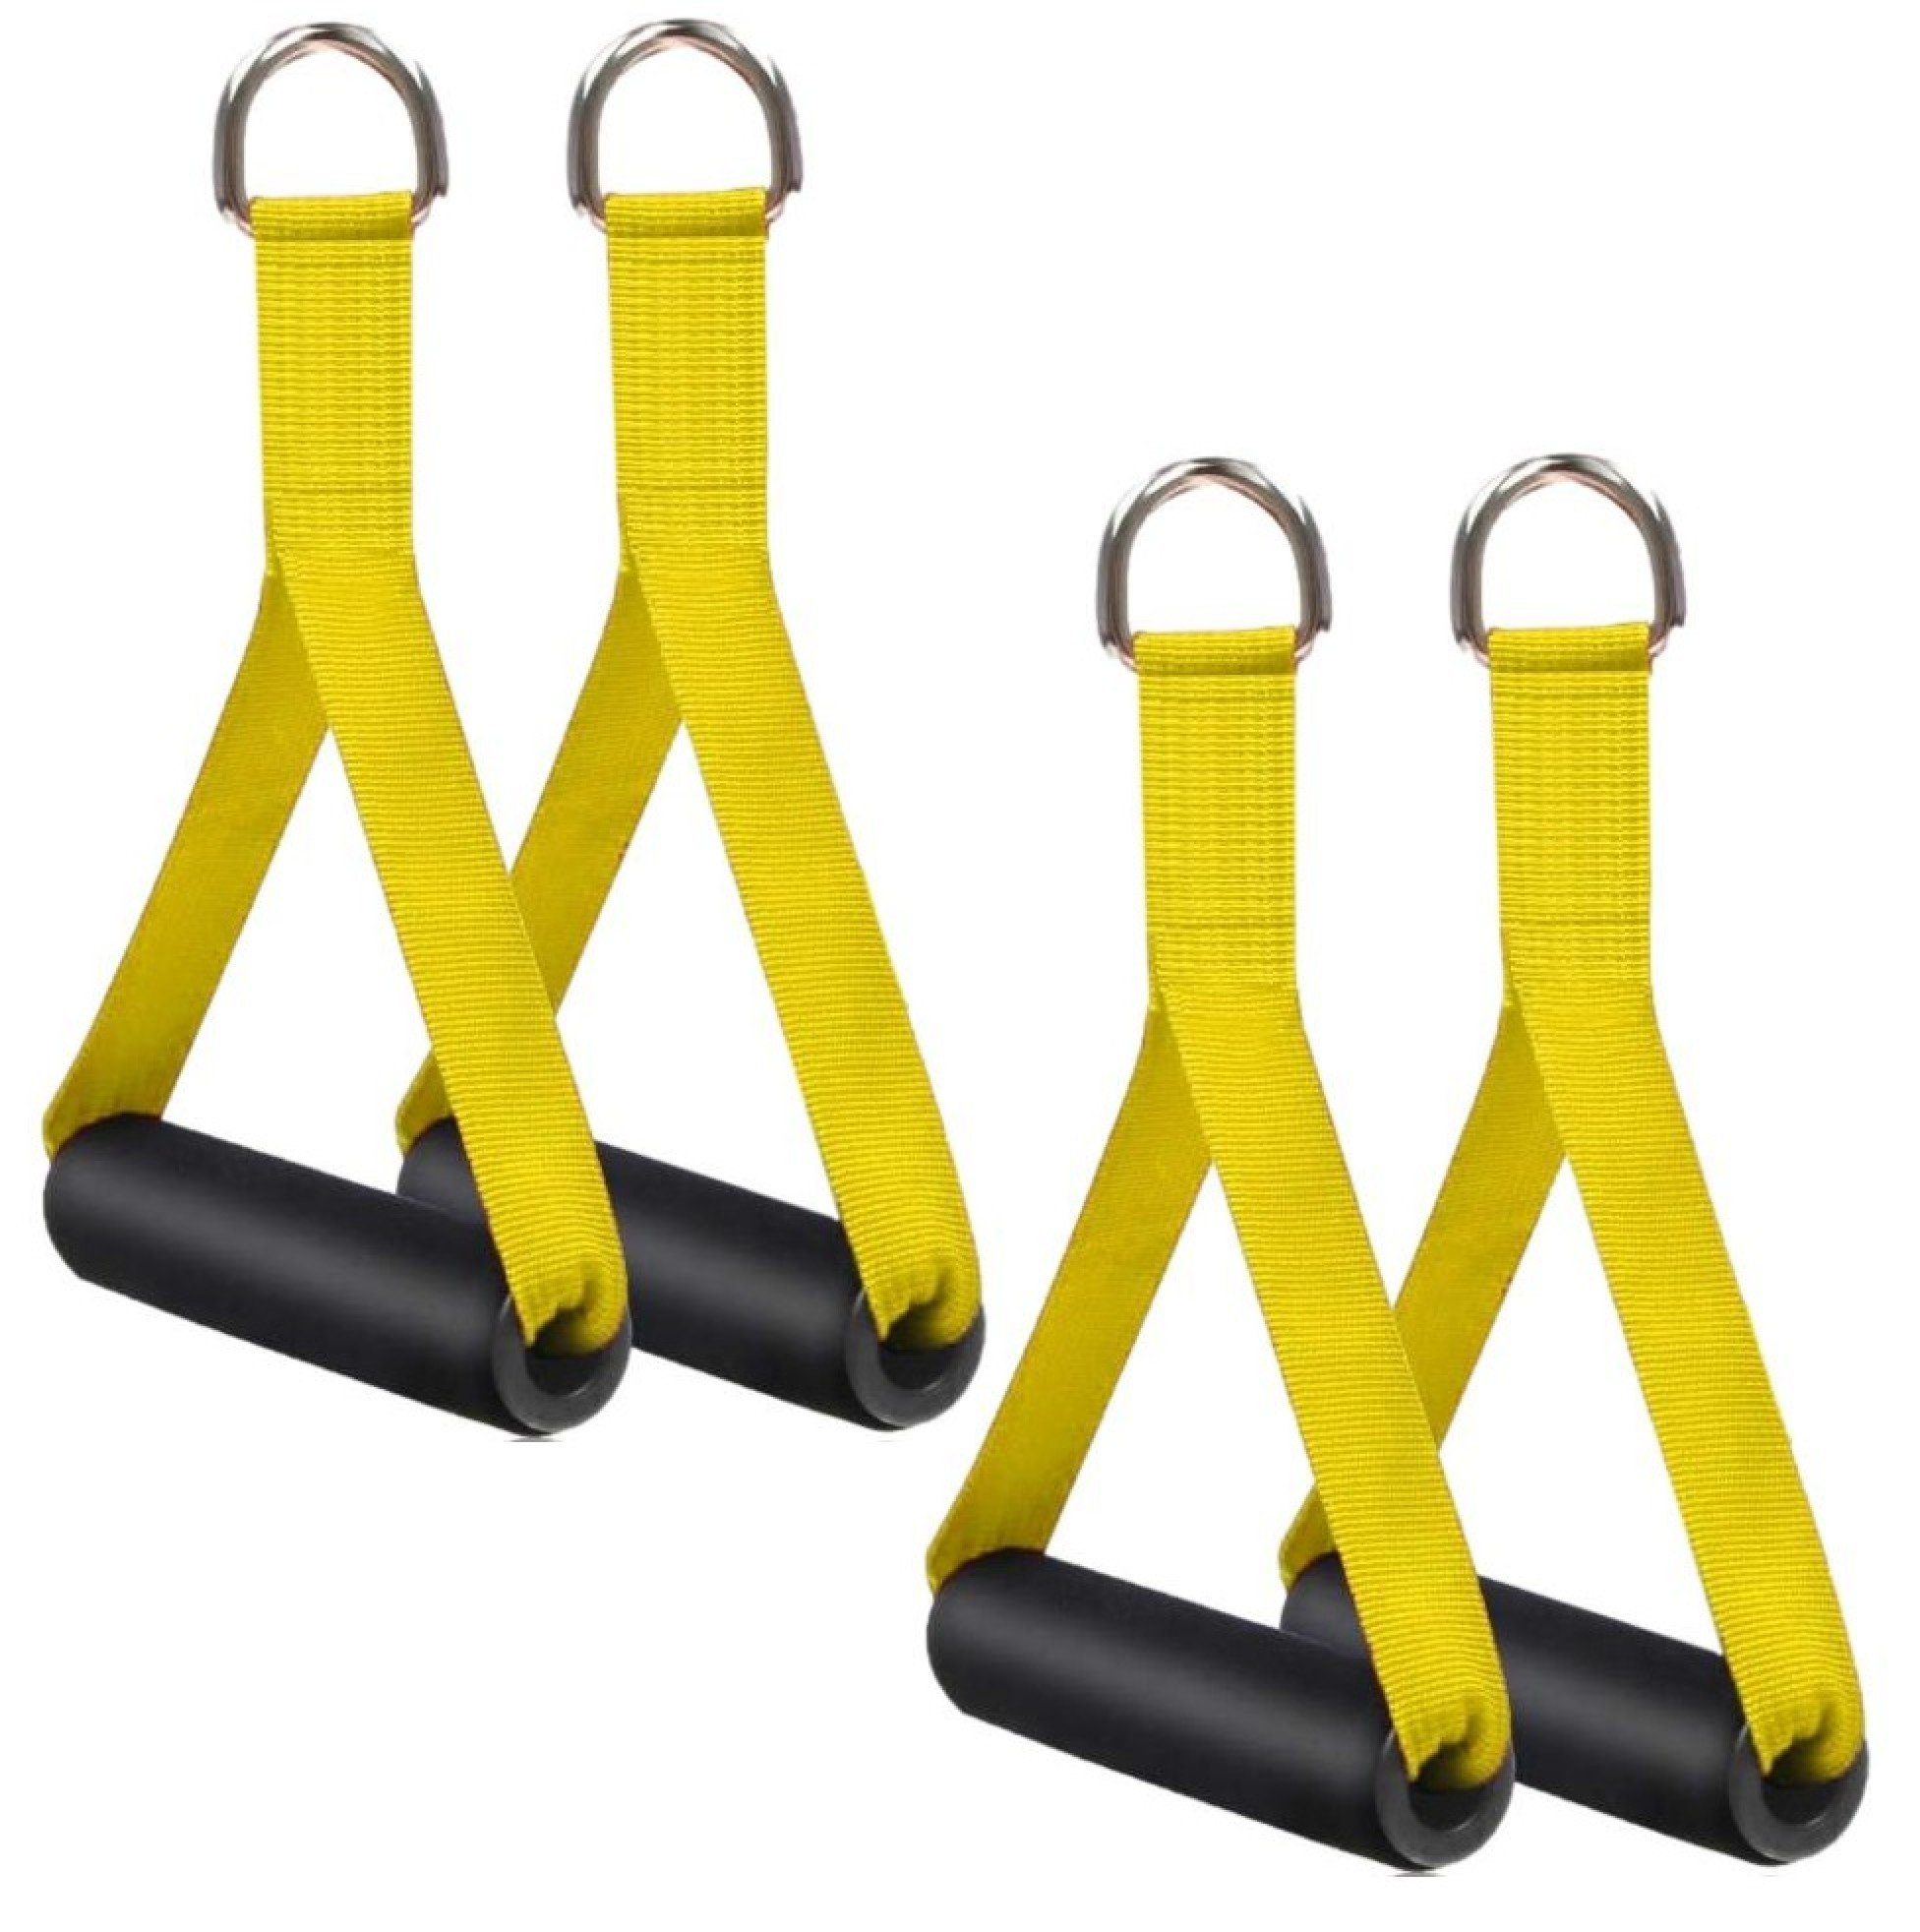 BAYLI Kurzhantel 4er Set Einhandgriff für Widerstandsbänder, Trainingsgriffe [gelb] | Kurzhanteln